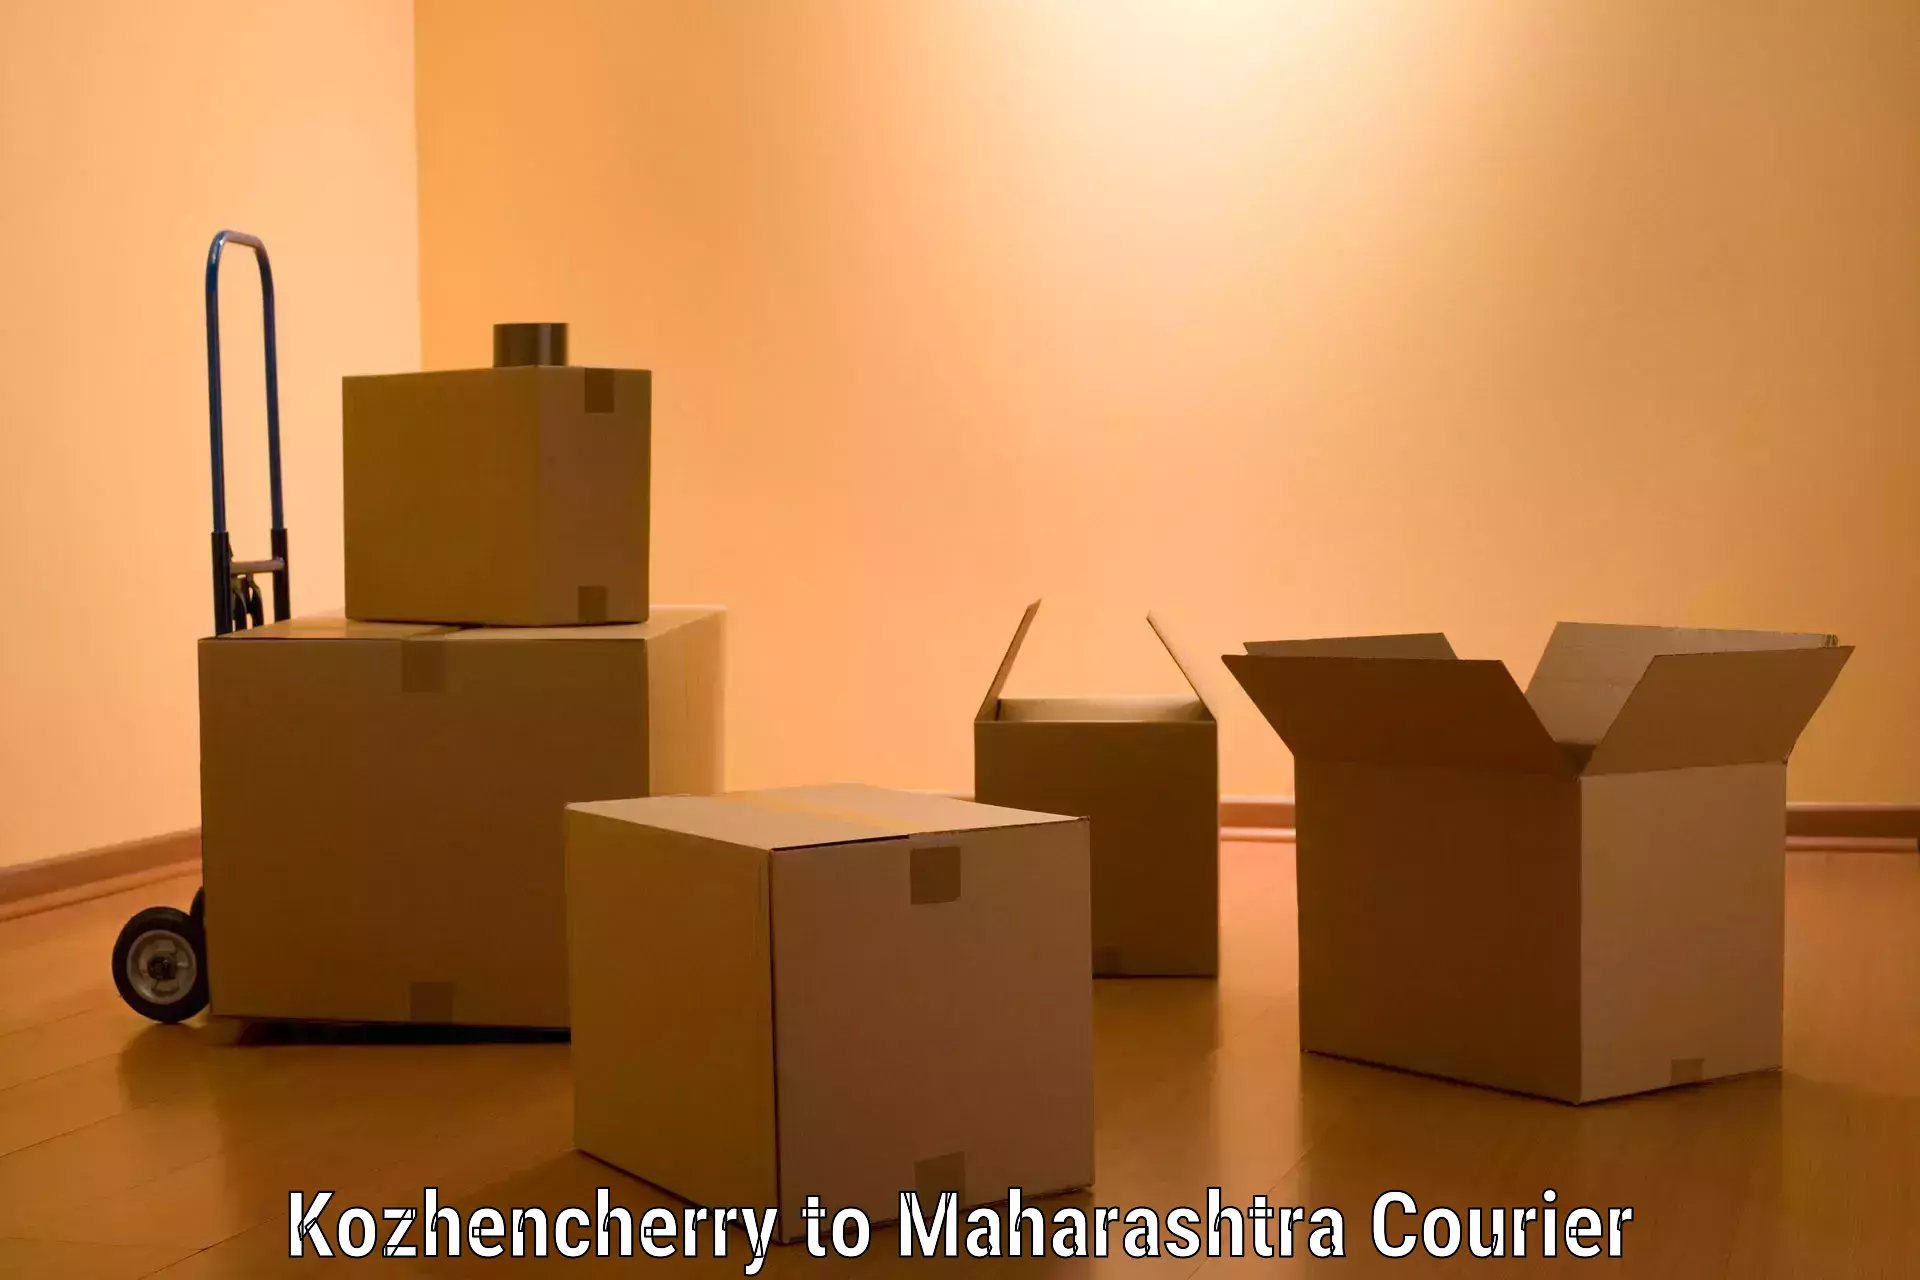 Moving and packing experts Kozhencherry to Navi Mumbai